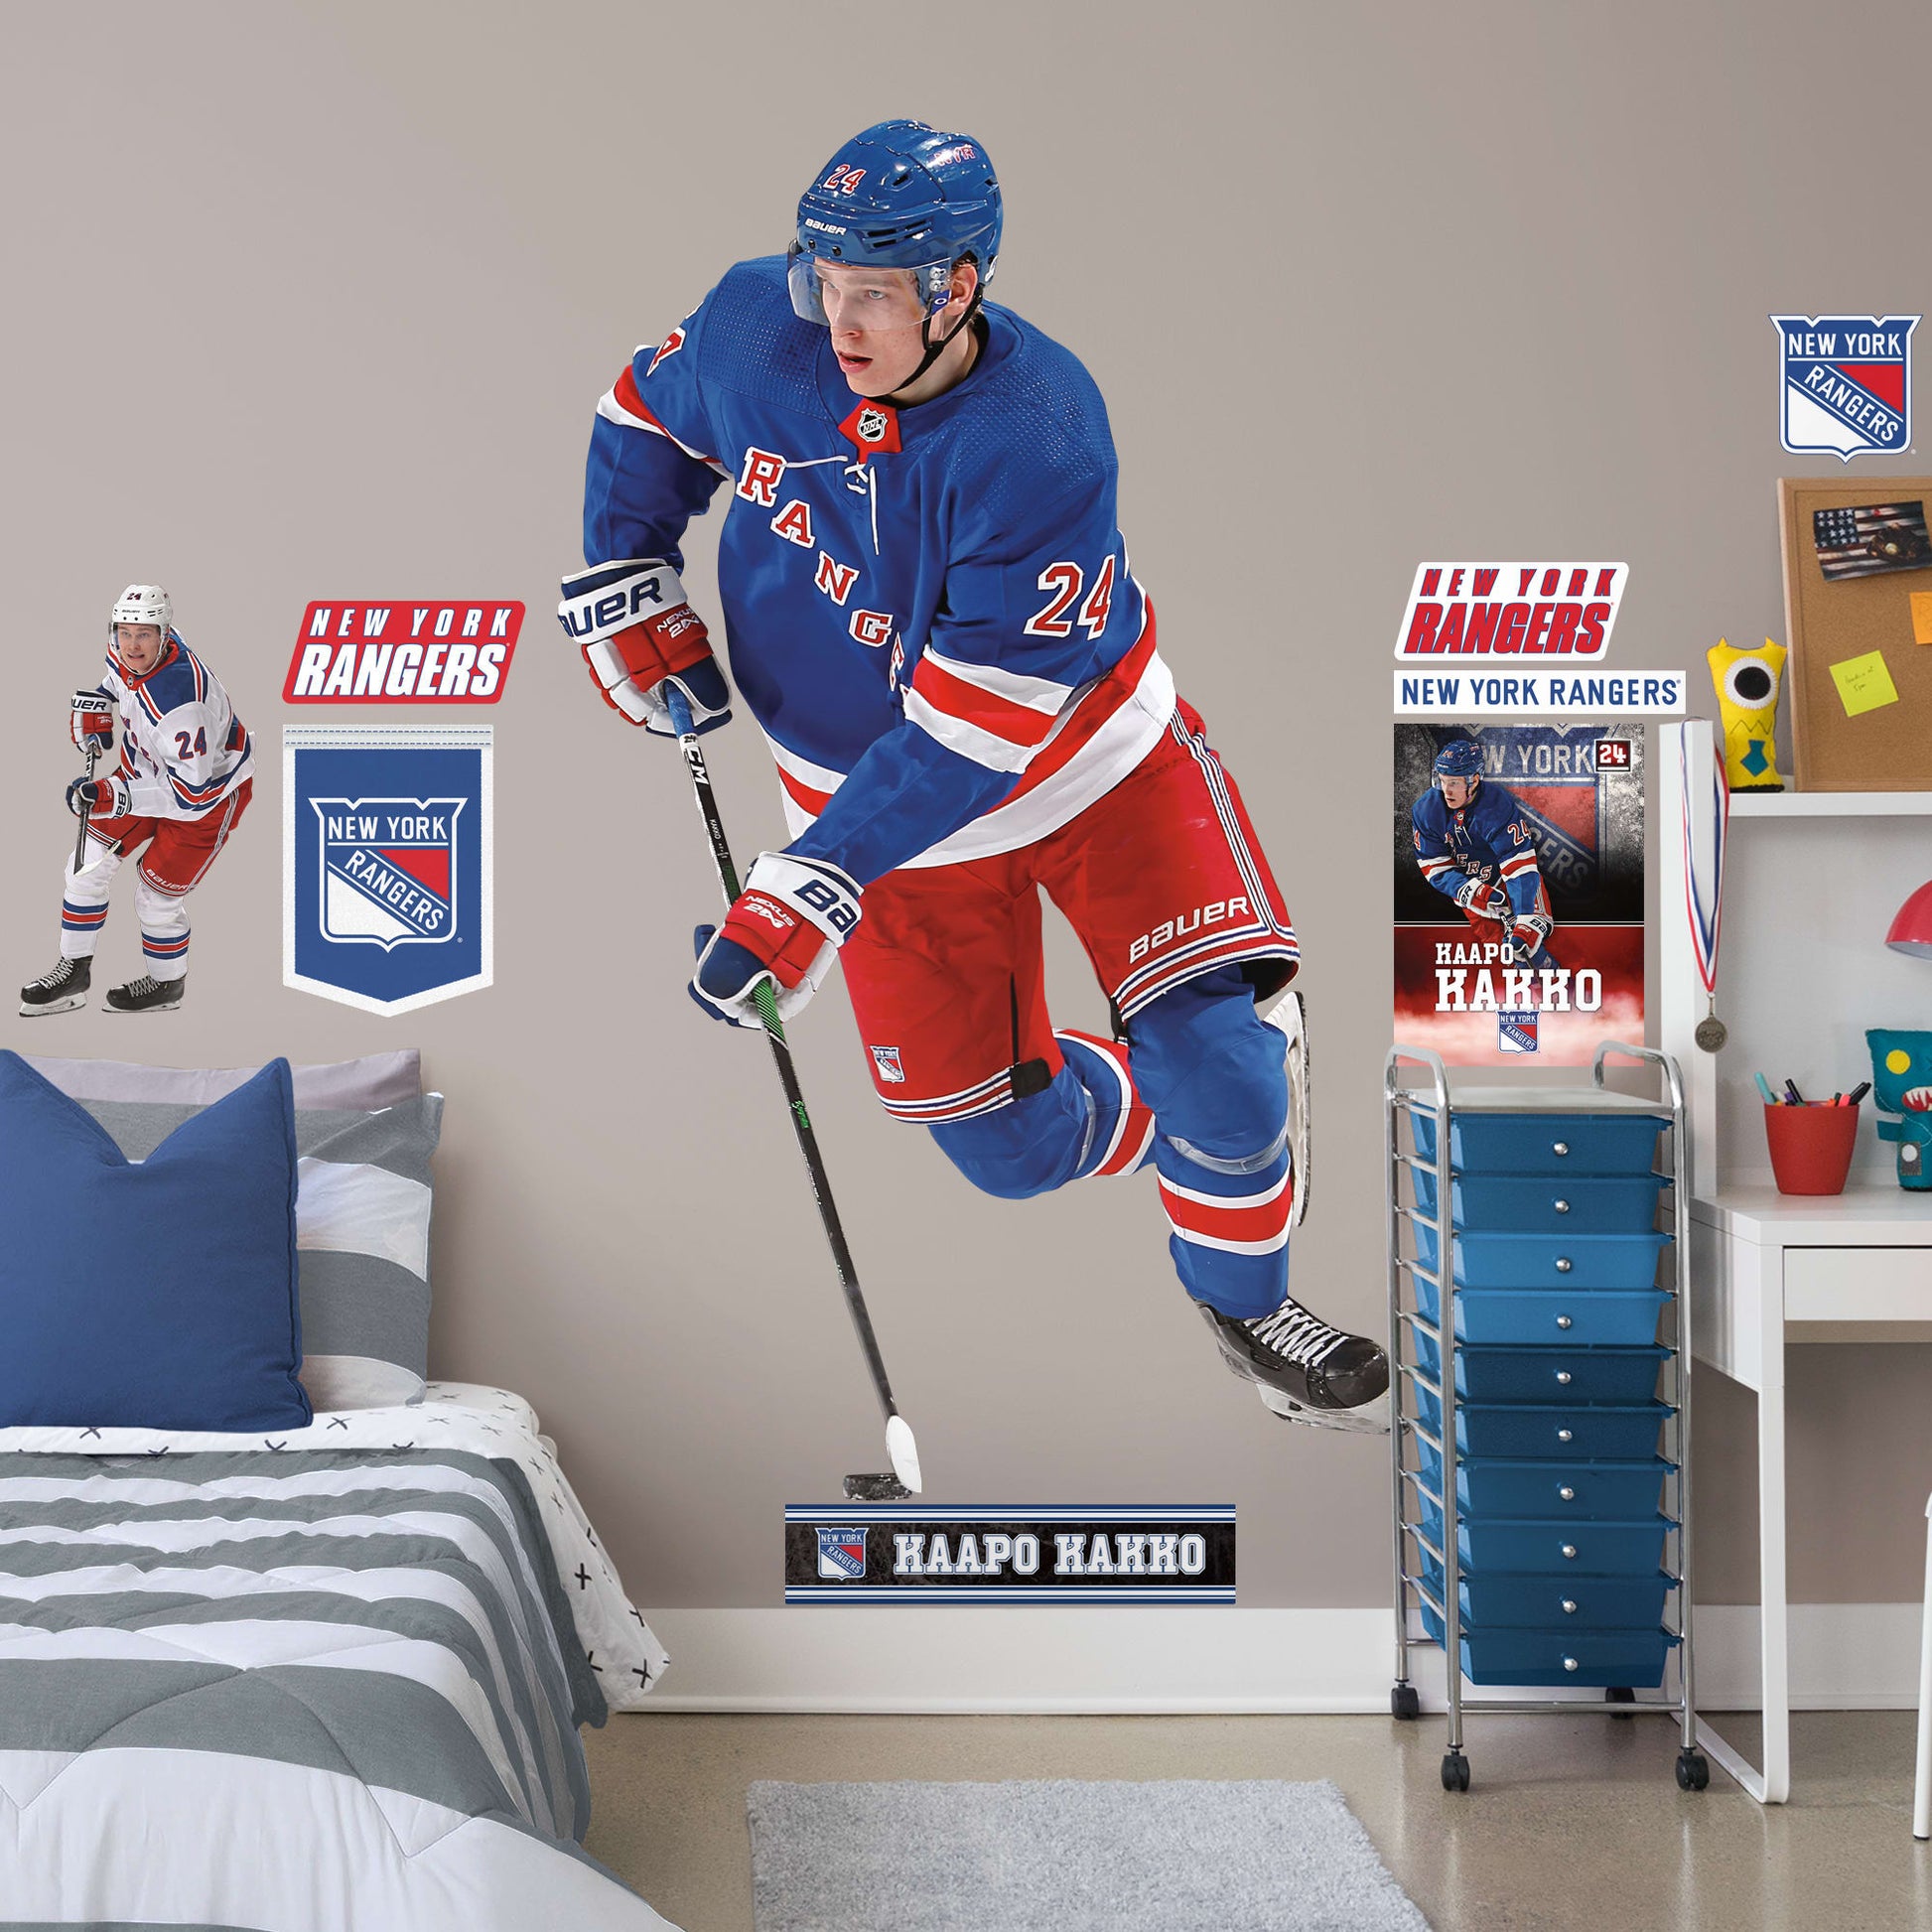 Kaapo Kakko 24 New York Rangers ice hockey player poster shirt